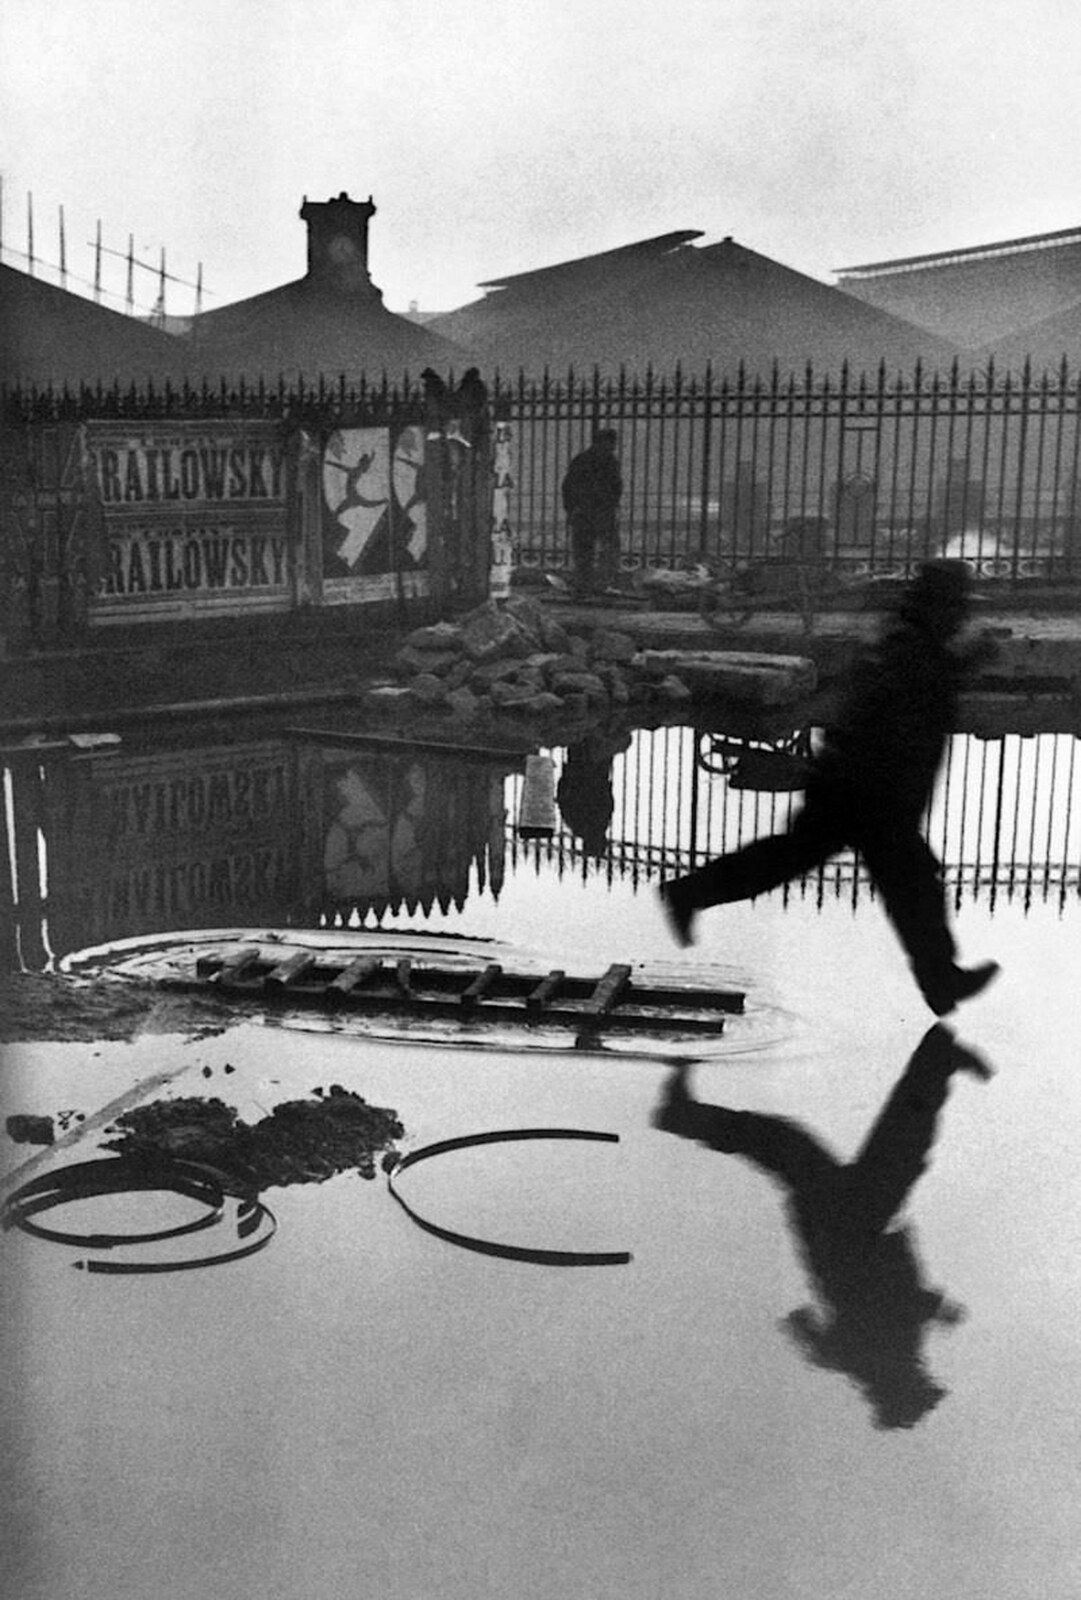 "Derrière la gare Saint-Lazare, Place de l’Europe, Paris, France", 1932 de Henri CARTIER BRESSON - Courtesy de la Fondation Henri CARTIER BRESSON / Magnum Photos